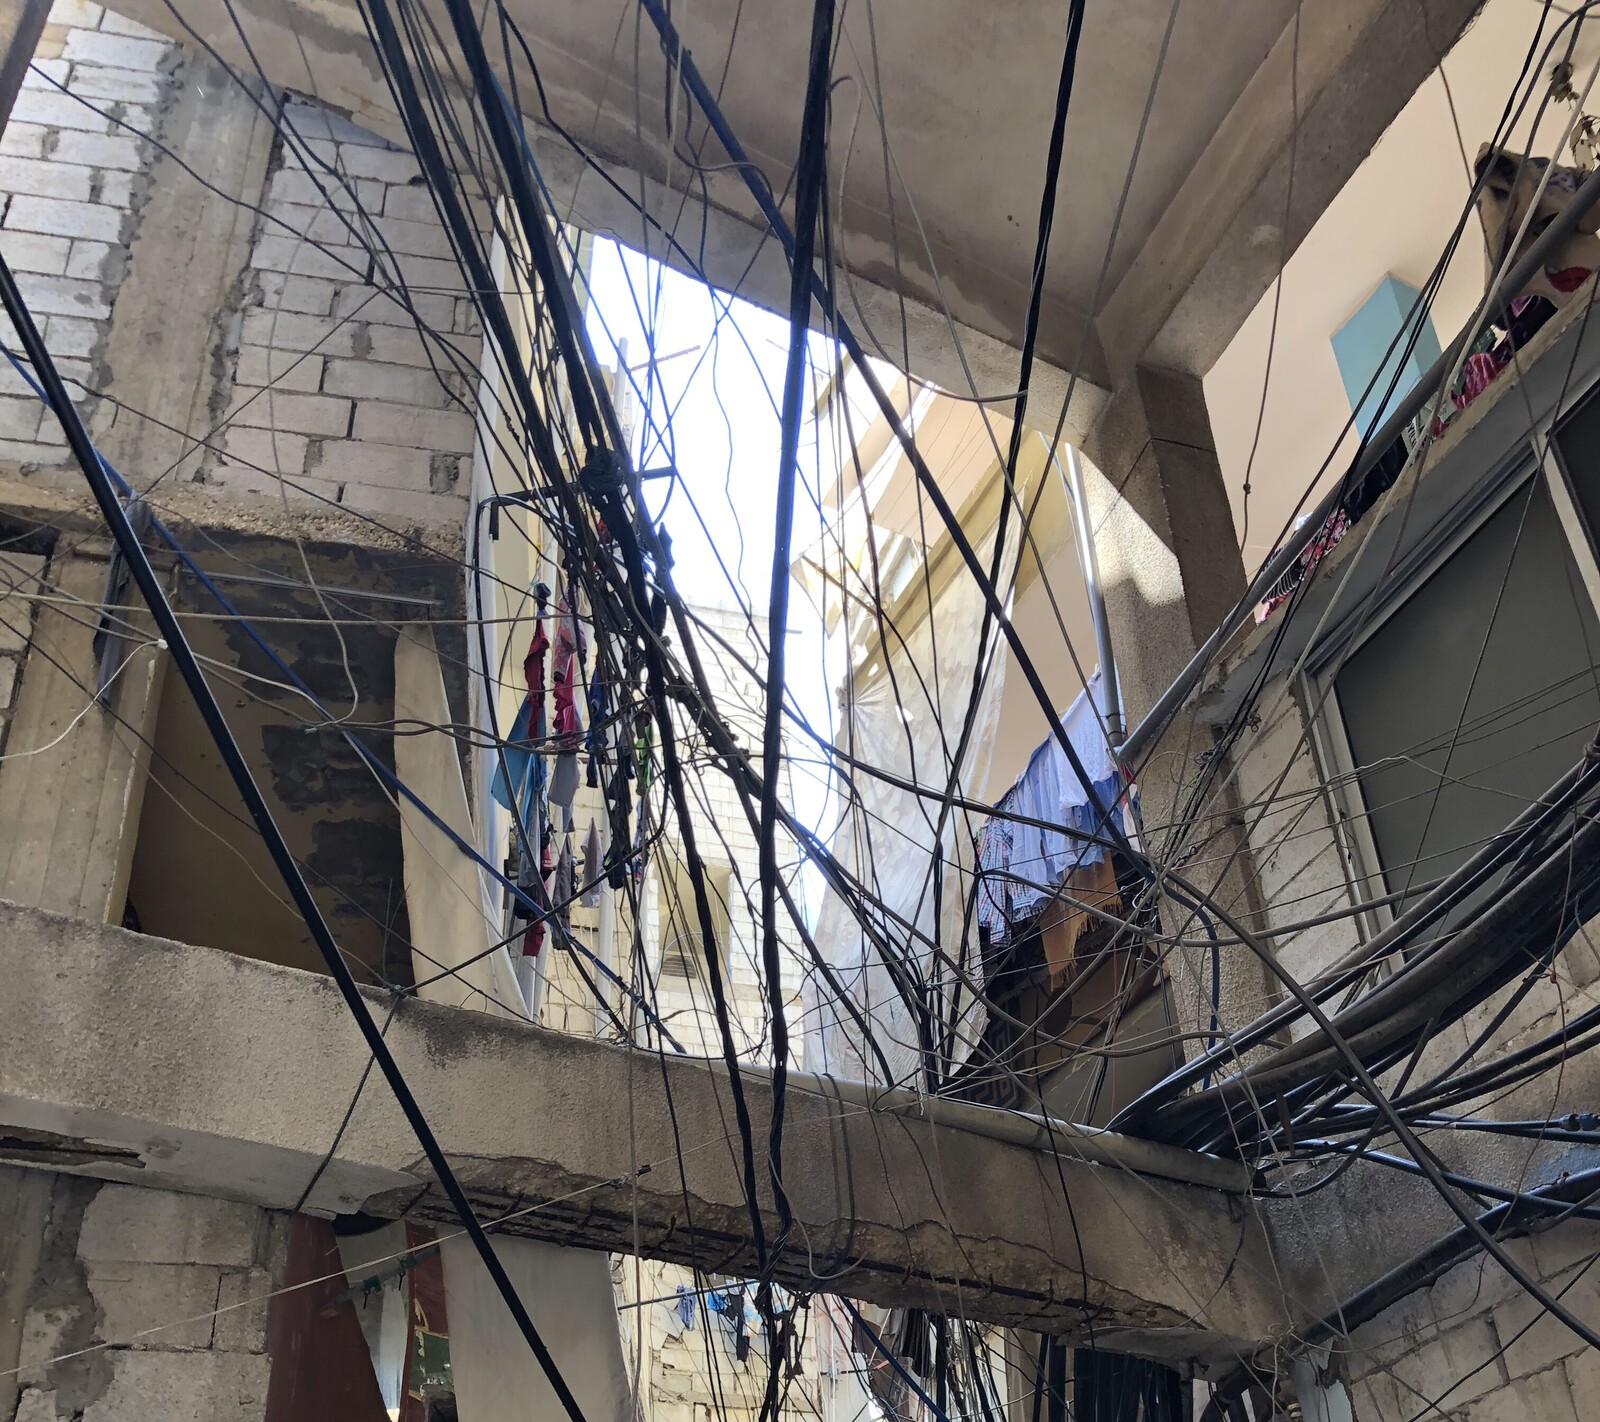 Das Flüchtlingscamp Shatlia ist überfüllt. Es wurde für palästinensische Flüchtlinge gebaut. Rund 22.000 von ihnen leben hier. Seit Ausbruch des Syrienkriegs sind weitere 18.000 Flüchtlinge dazu kommen. Wasserleitungen und Stromleitungen liegen oft